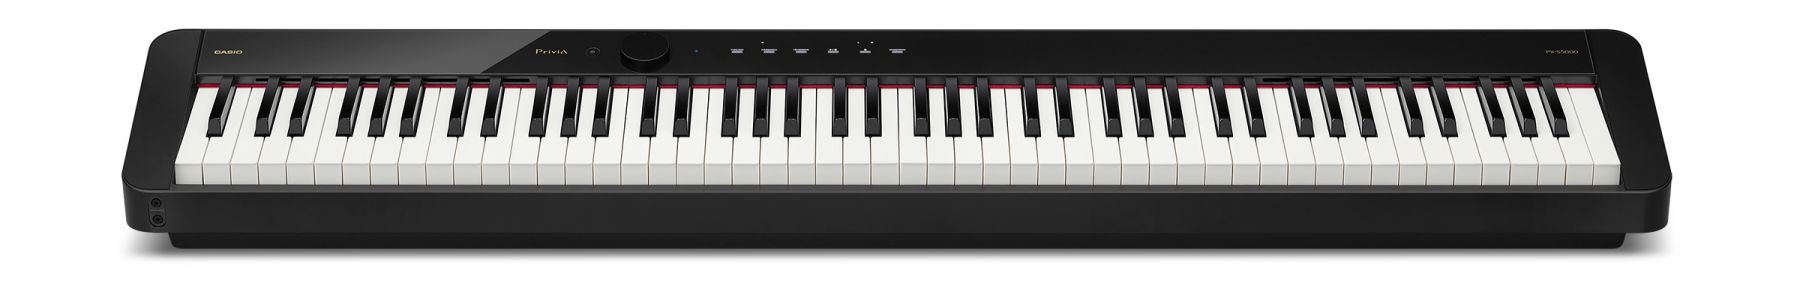 Цифровое фортепиано Casio Privia PX-S5000BK 88клав. черный